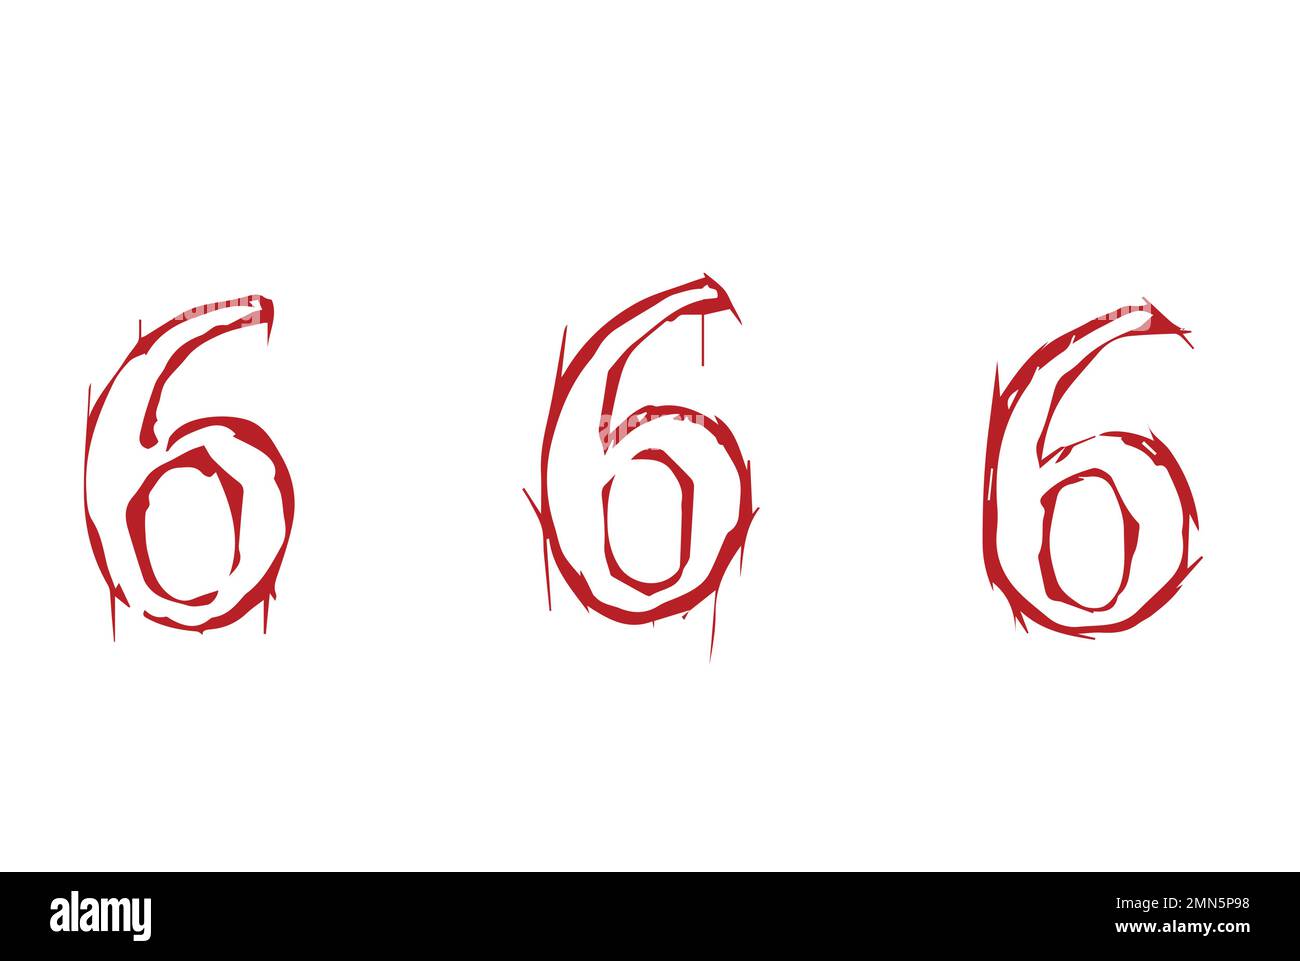 Với chất lượng hình ảnh sống động và chi tiết đến từng chi tiết, ảnh số 666 sẽ khiến bạn ngỡ ngàng và muốn xem lần nữa. Hãy dành thời gian nghiên cứu số 666 và tìm hiểu ý nghĩa đằng sau một con số gây tranh cãi này.